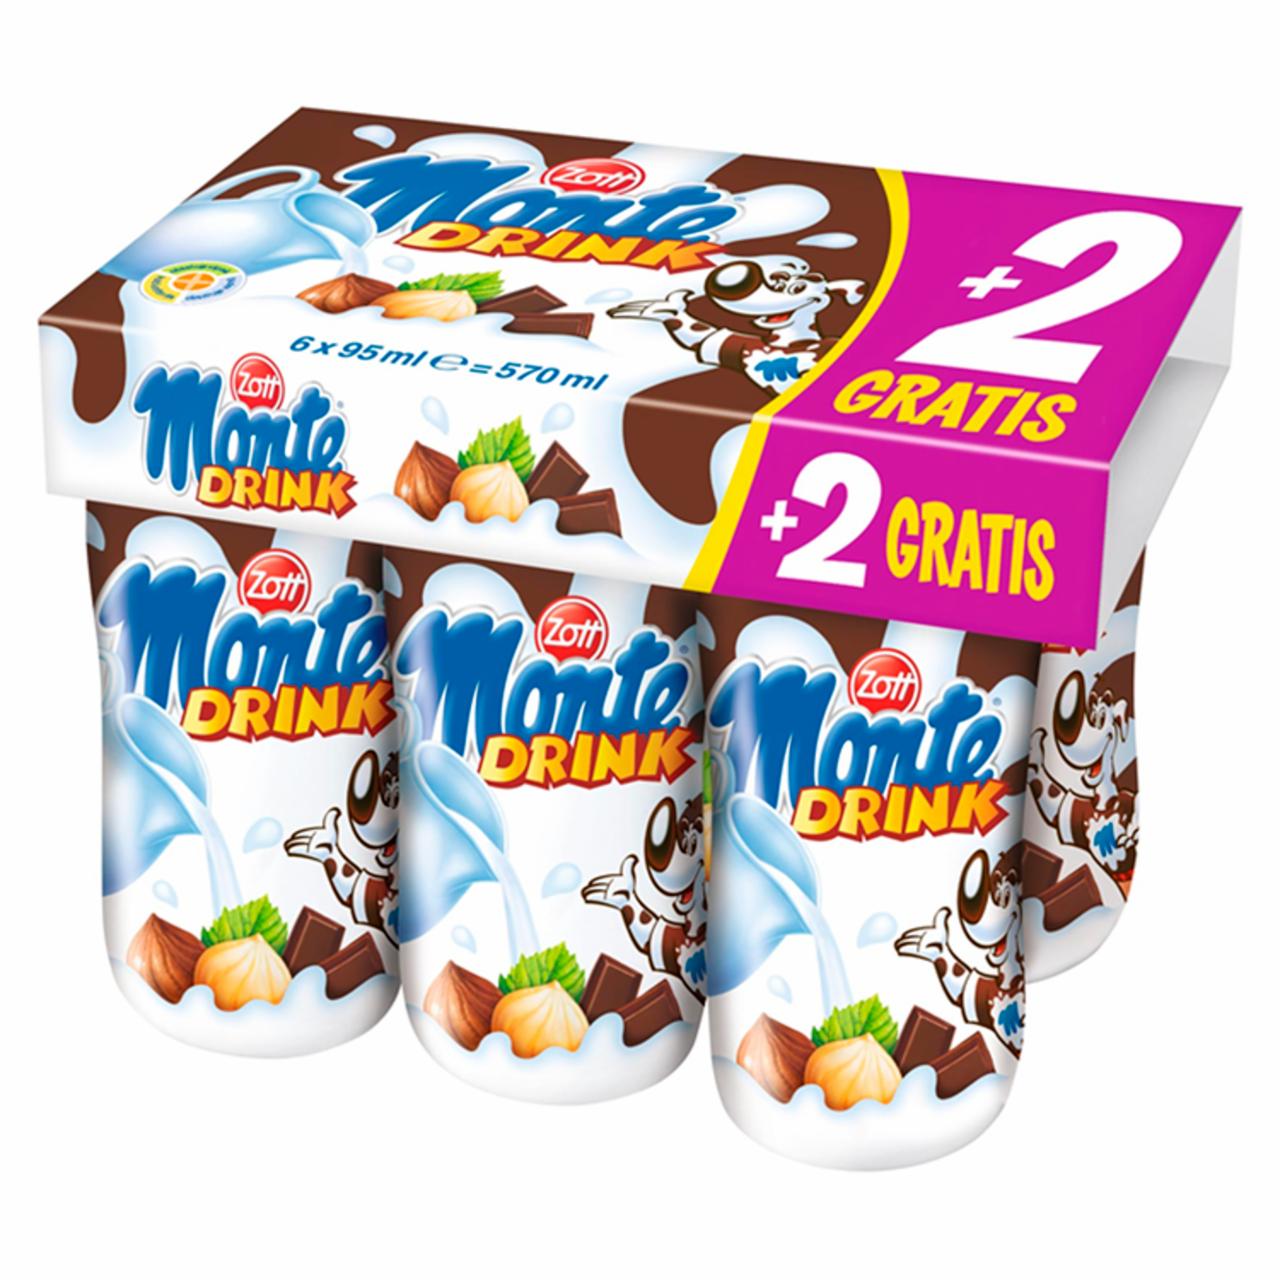 Képek - Zott Monte csokoládés, mogyorós ital 6 x 95 ml